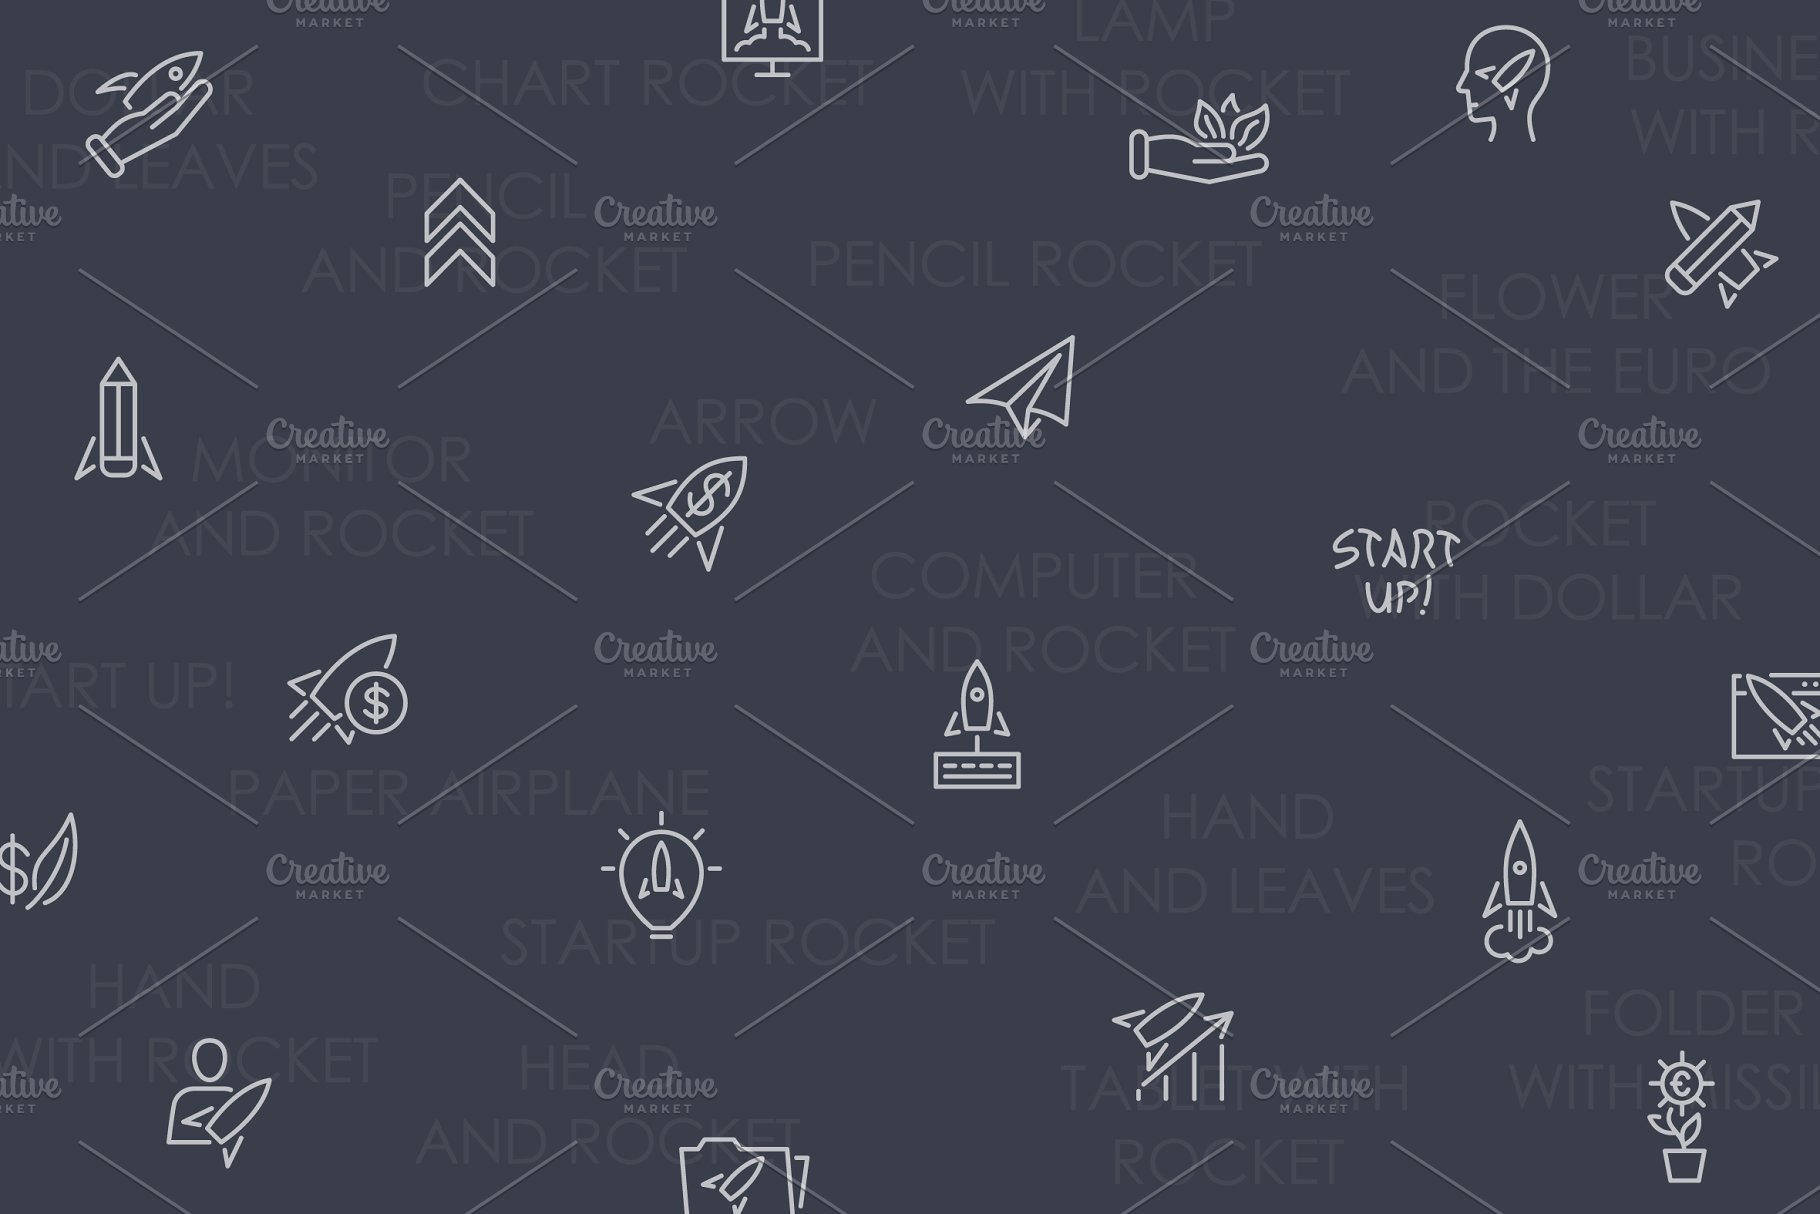 火箭启动图标素材 Startup thinline icon